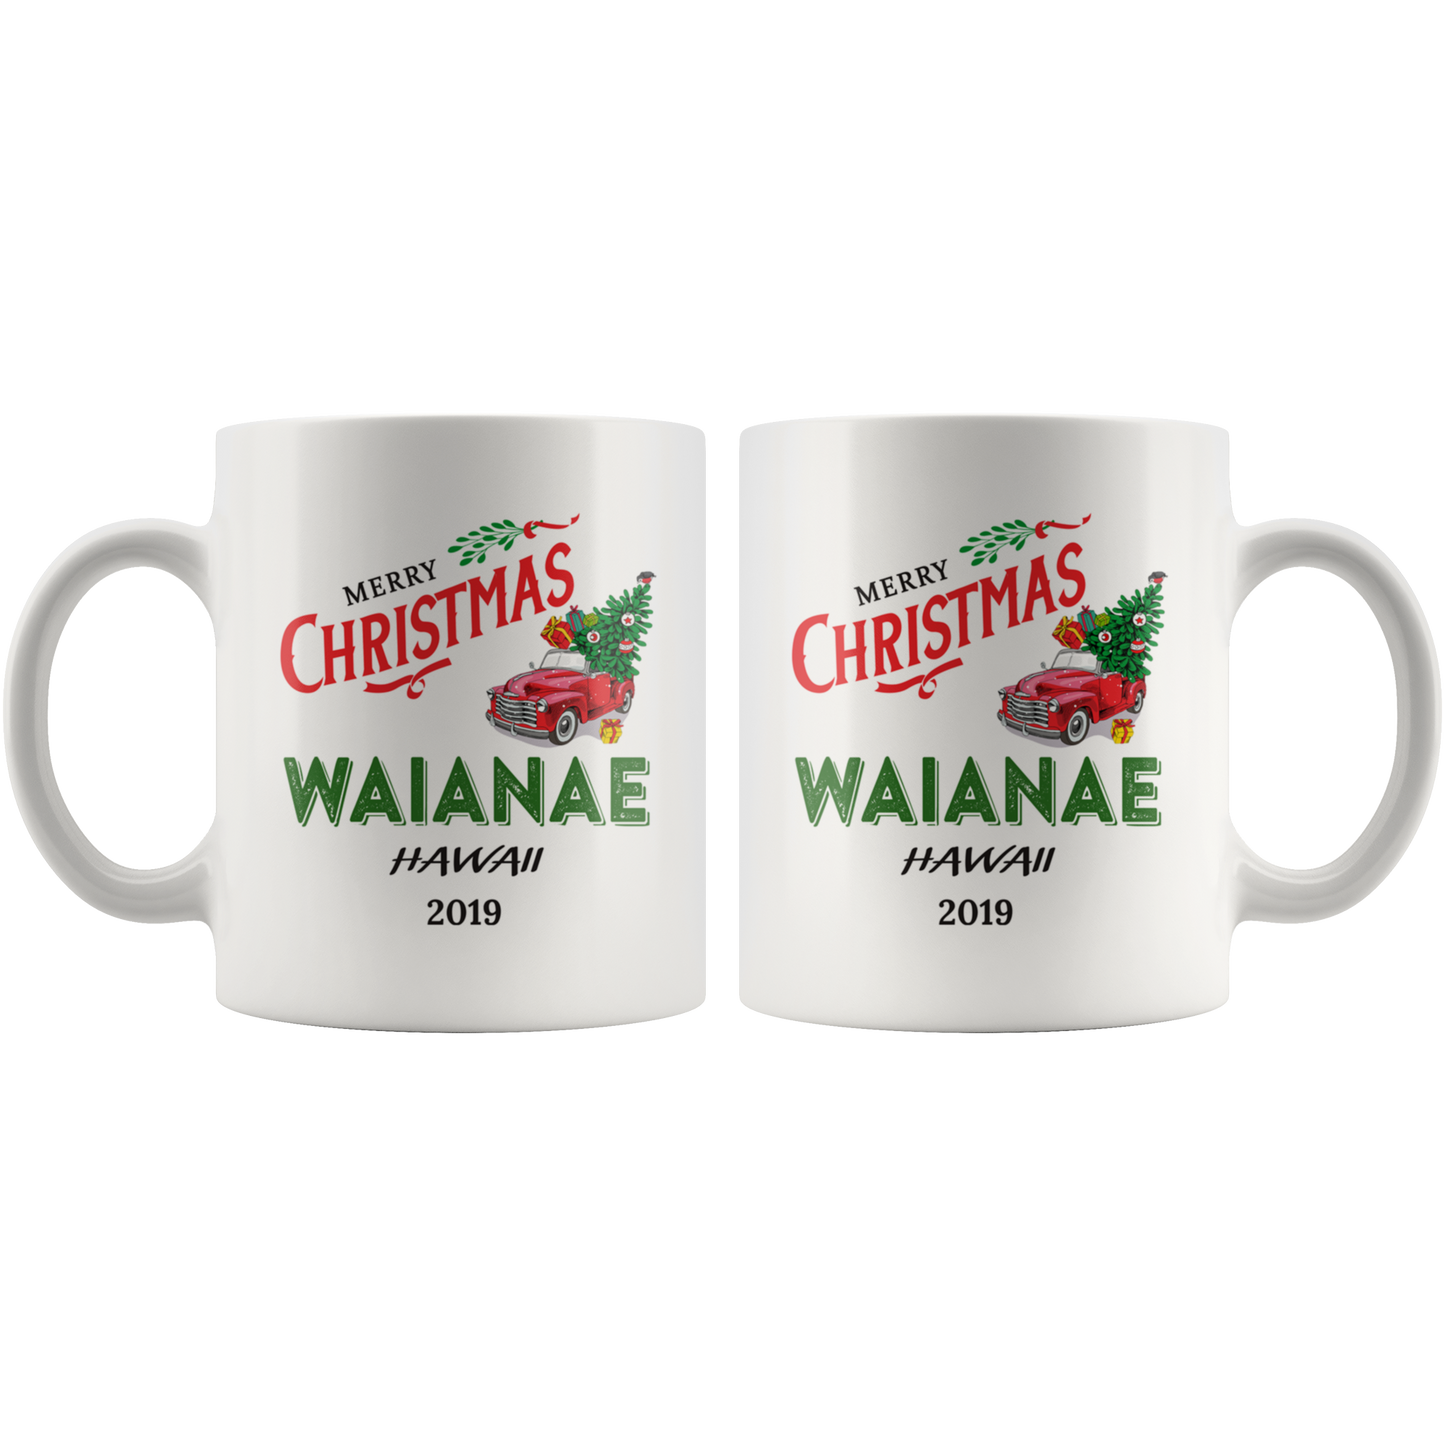 ND20747381-sp-16845 - Tis The Season Christmas Mug - Christmas Mug 2019 Waianae Ha